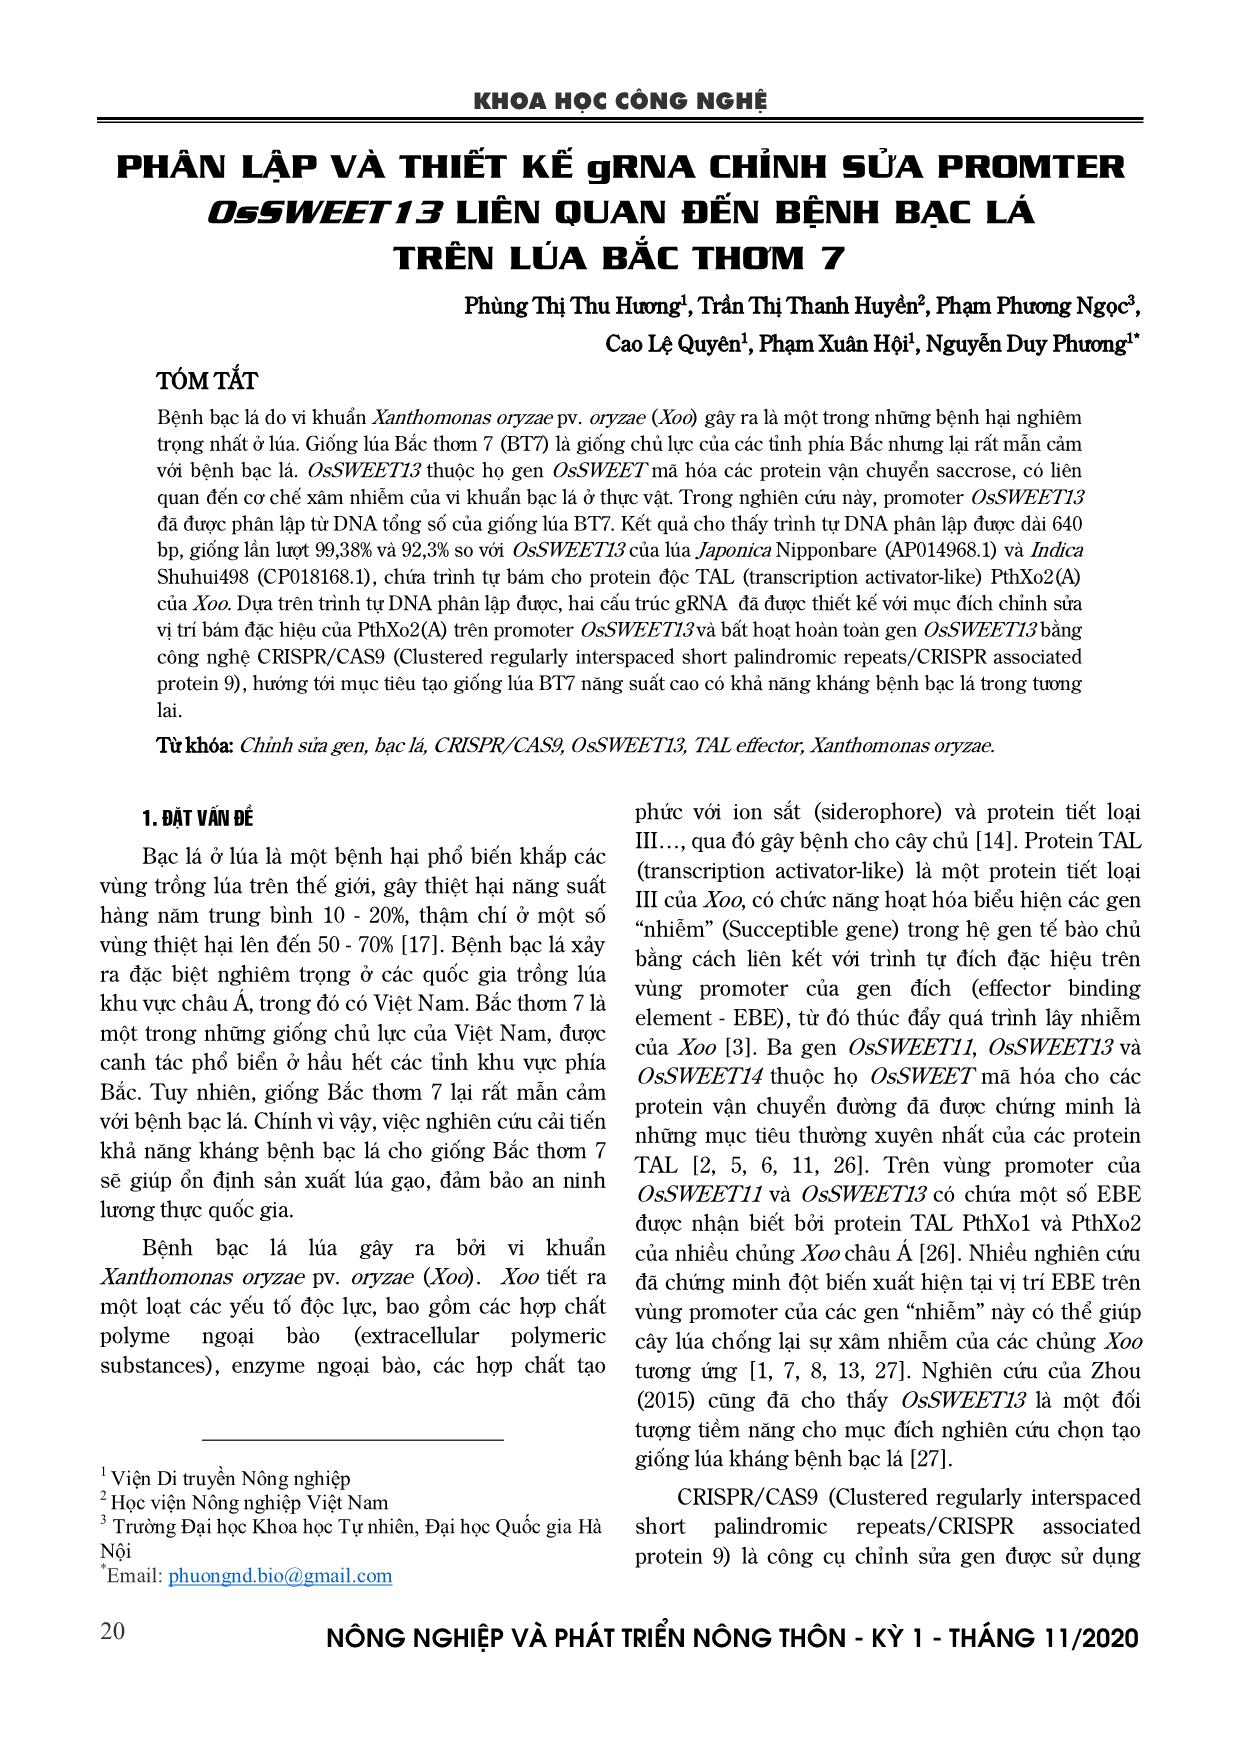 Phân lập và thiết kế gRNA chỉnh sửa promter OsSWEET13 liên quan đến bệnh bạc lá trên lúa Bắc thơm 7 trang 1